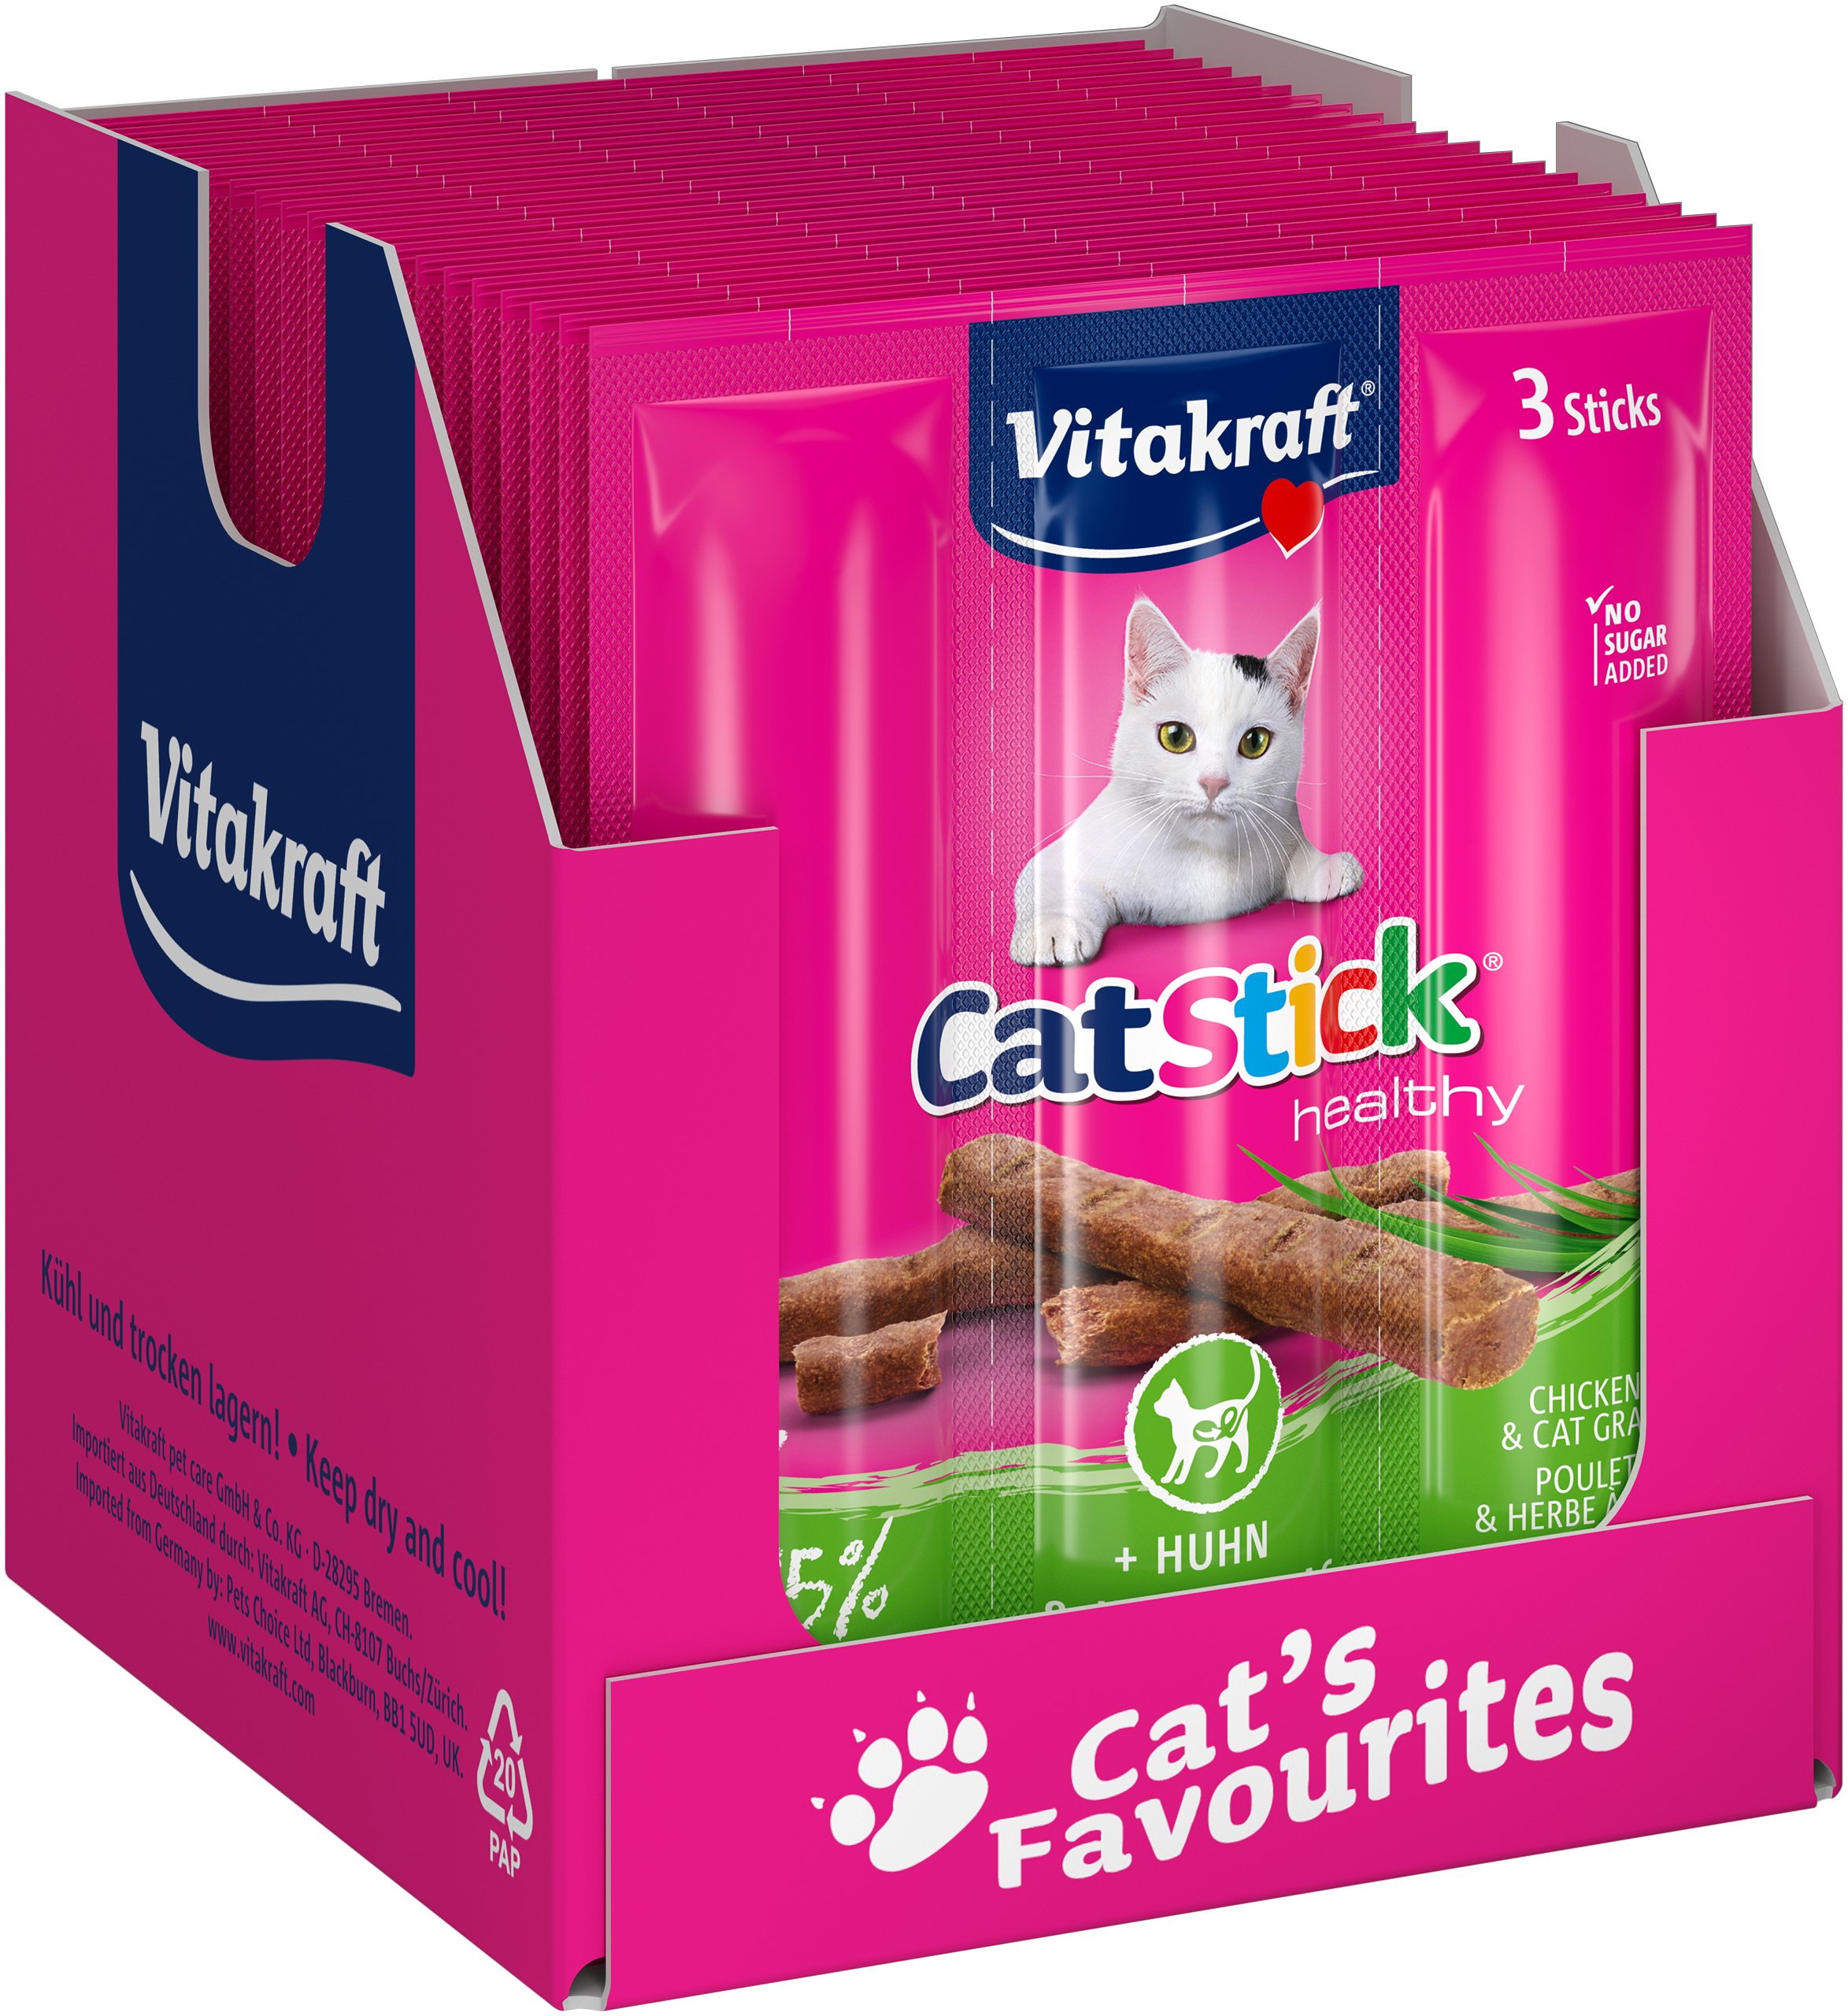 Vitakraft - Cat treats - 20 x Cat Stick chicken&cat grass x 3 sticks 18g